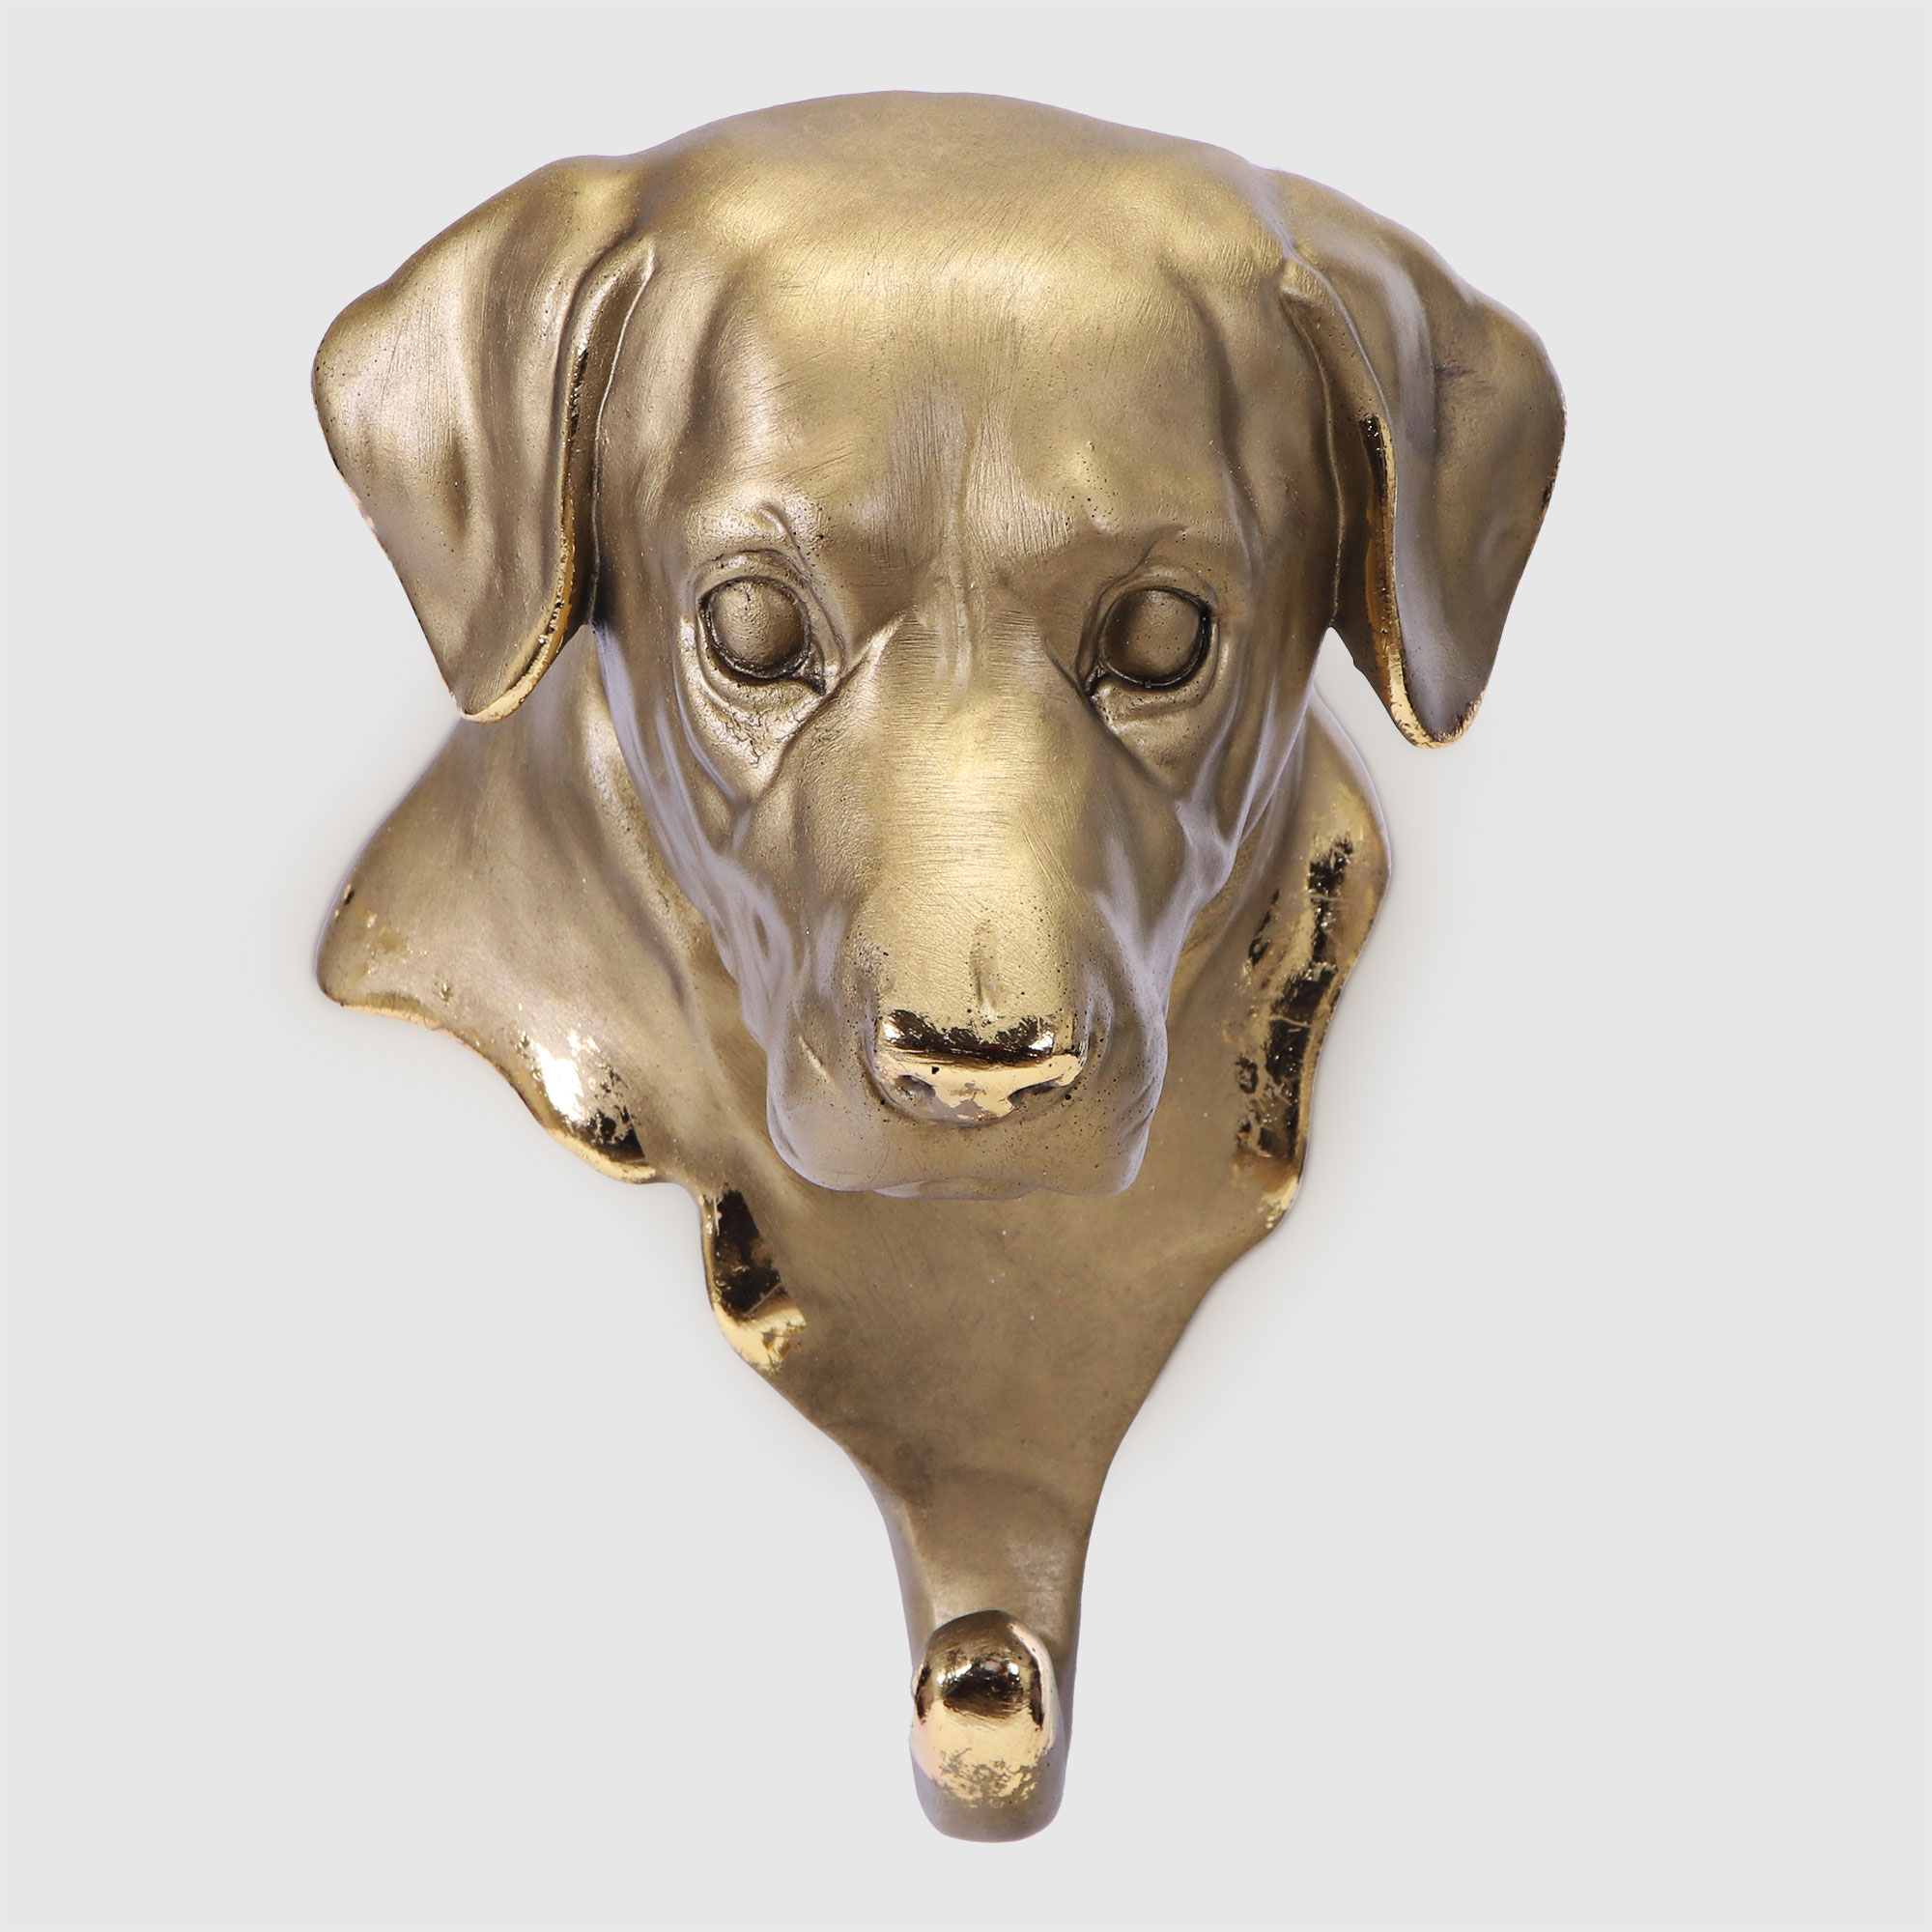 Вешалка настенная Тпк полиформ голова собаки бронзовая,высота 20 см белка с орешками тпк полиформ бронзовая высота 32 см